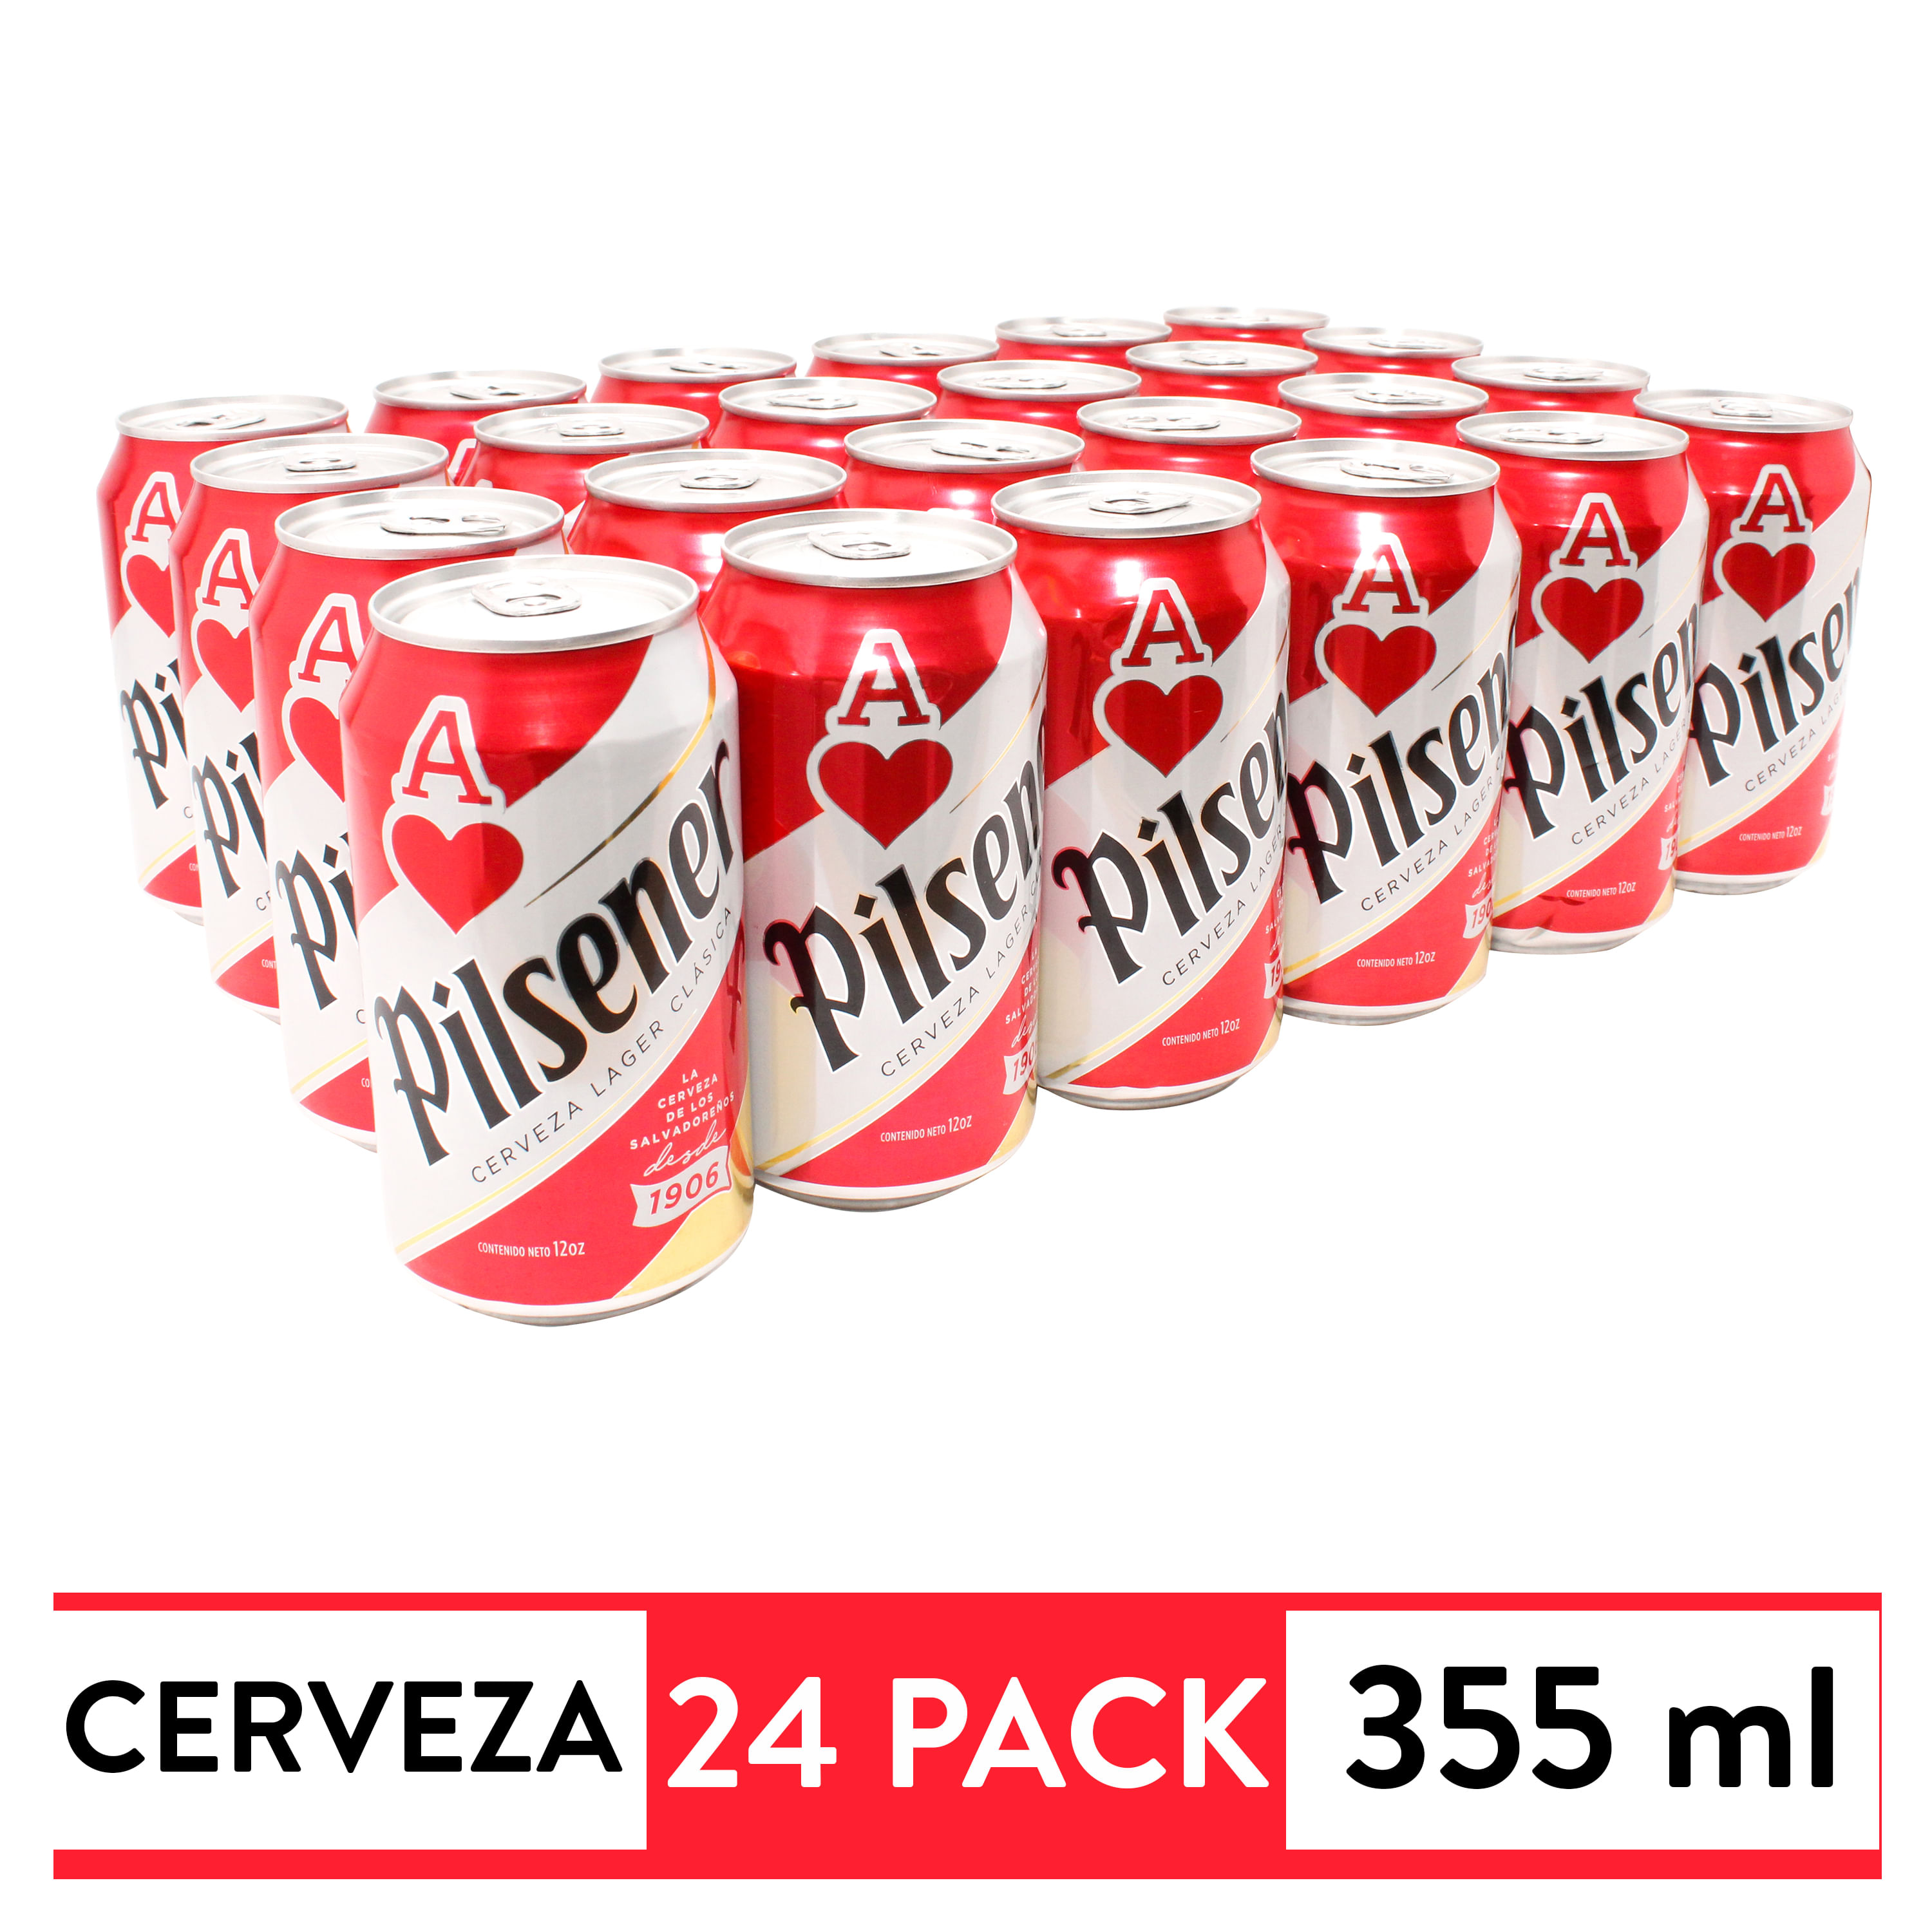 Cerveza-Pilsener-en-Lata-24-Pack-355ml-1-3636